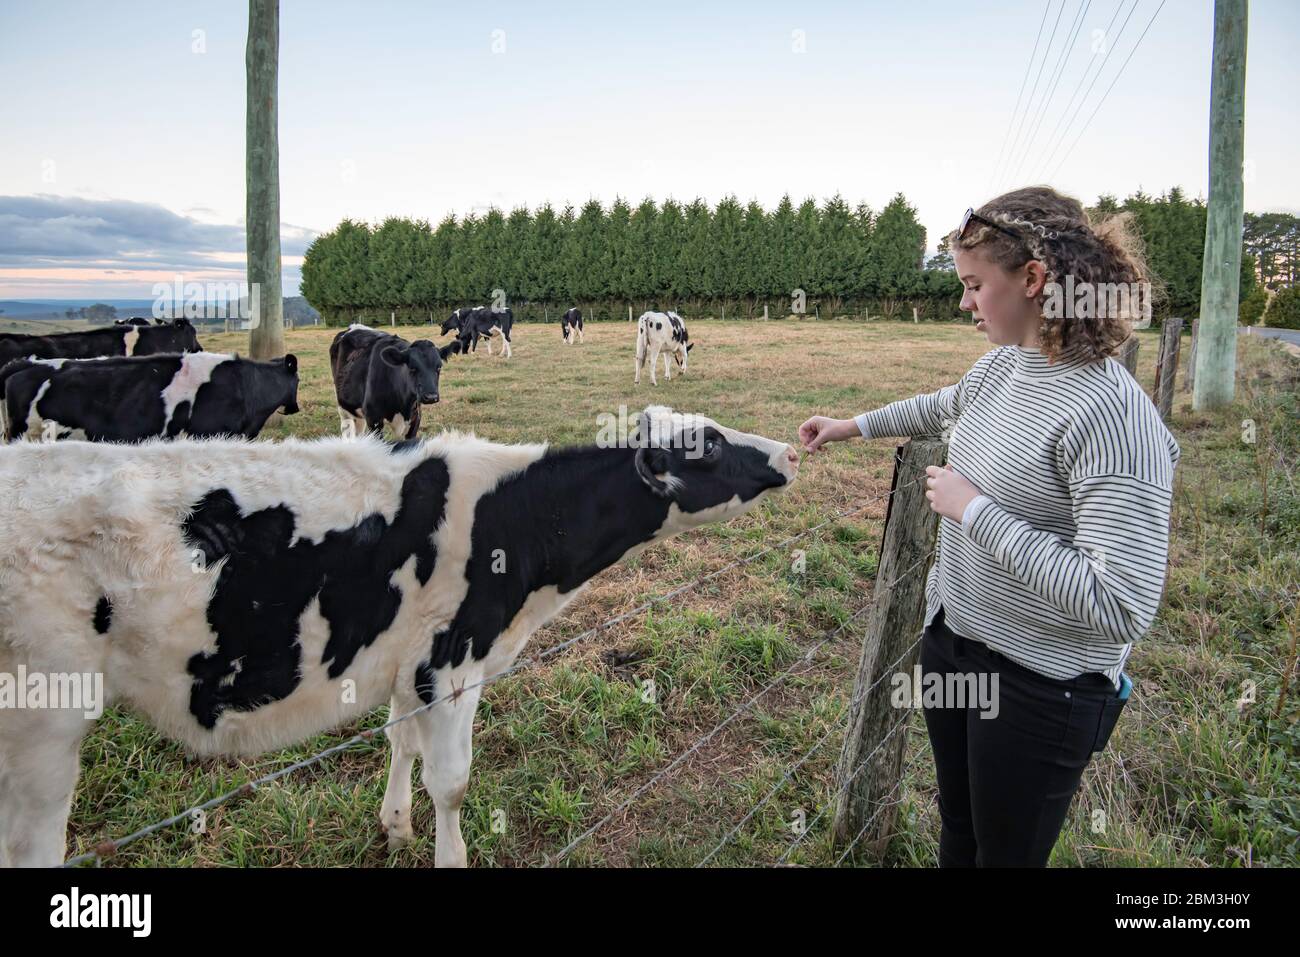 Une jeune fille australienne blanche adolescente aux cheveux bouclés blonds nourrit une vache laitière d'herbe sur une clôture barbelée en Australie Banque D'Images